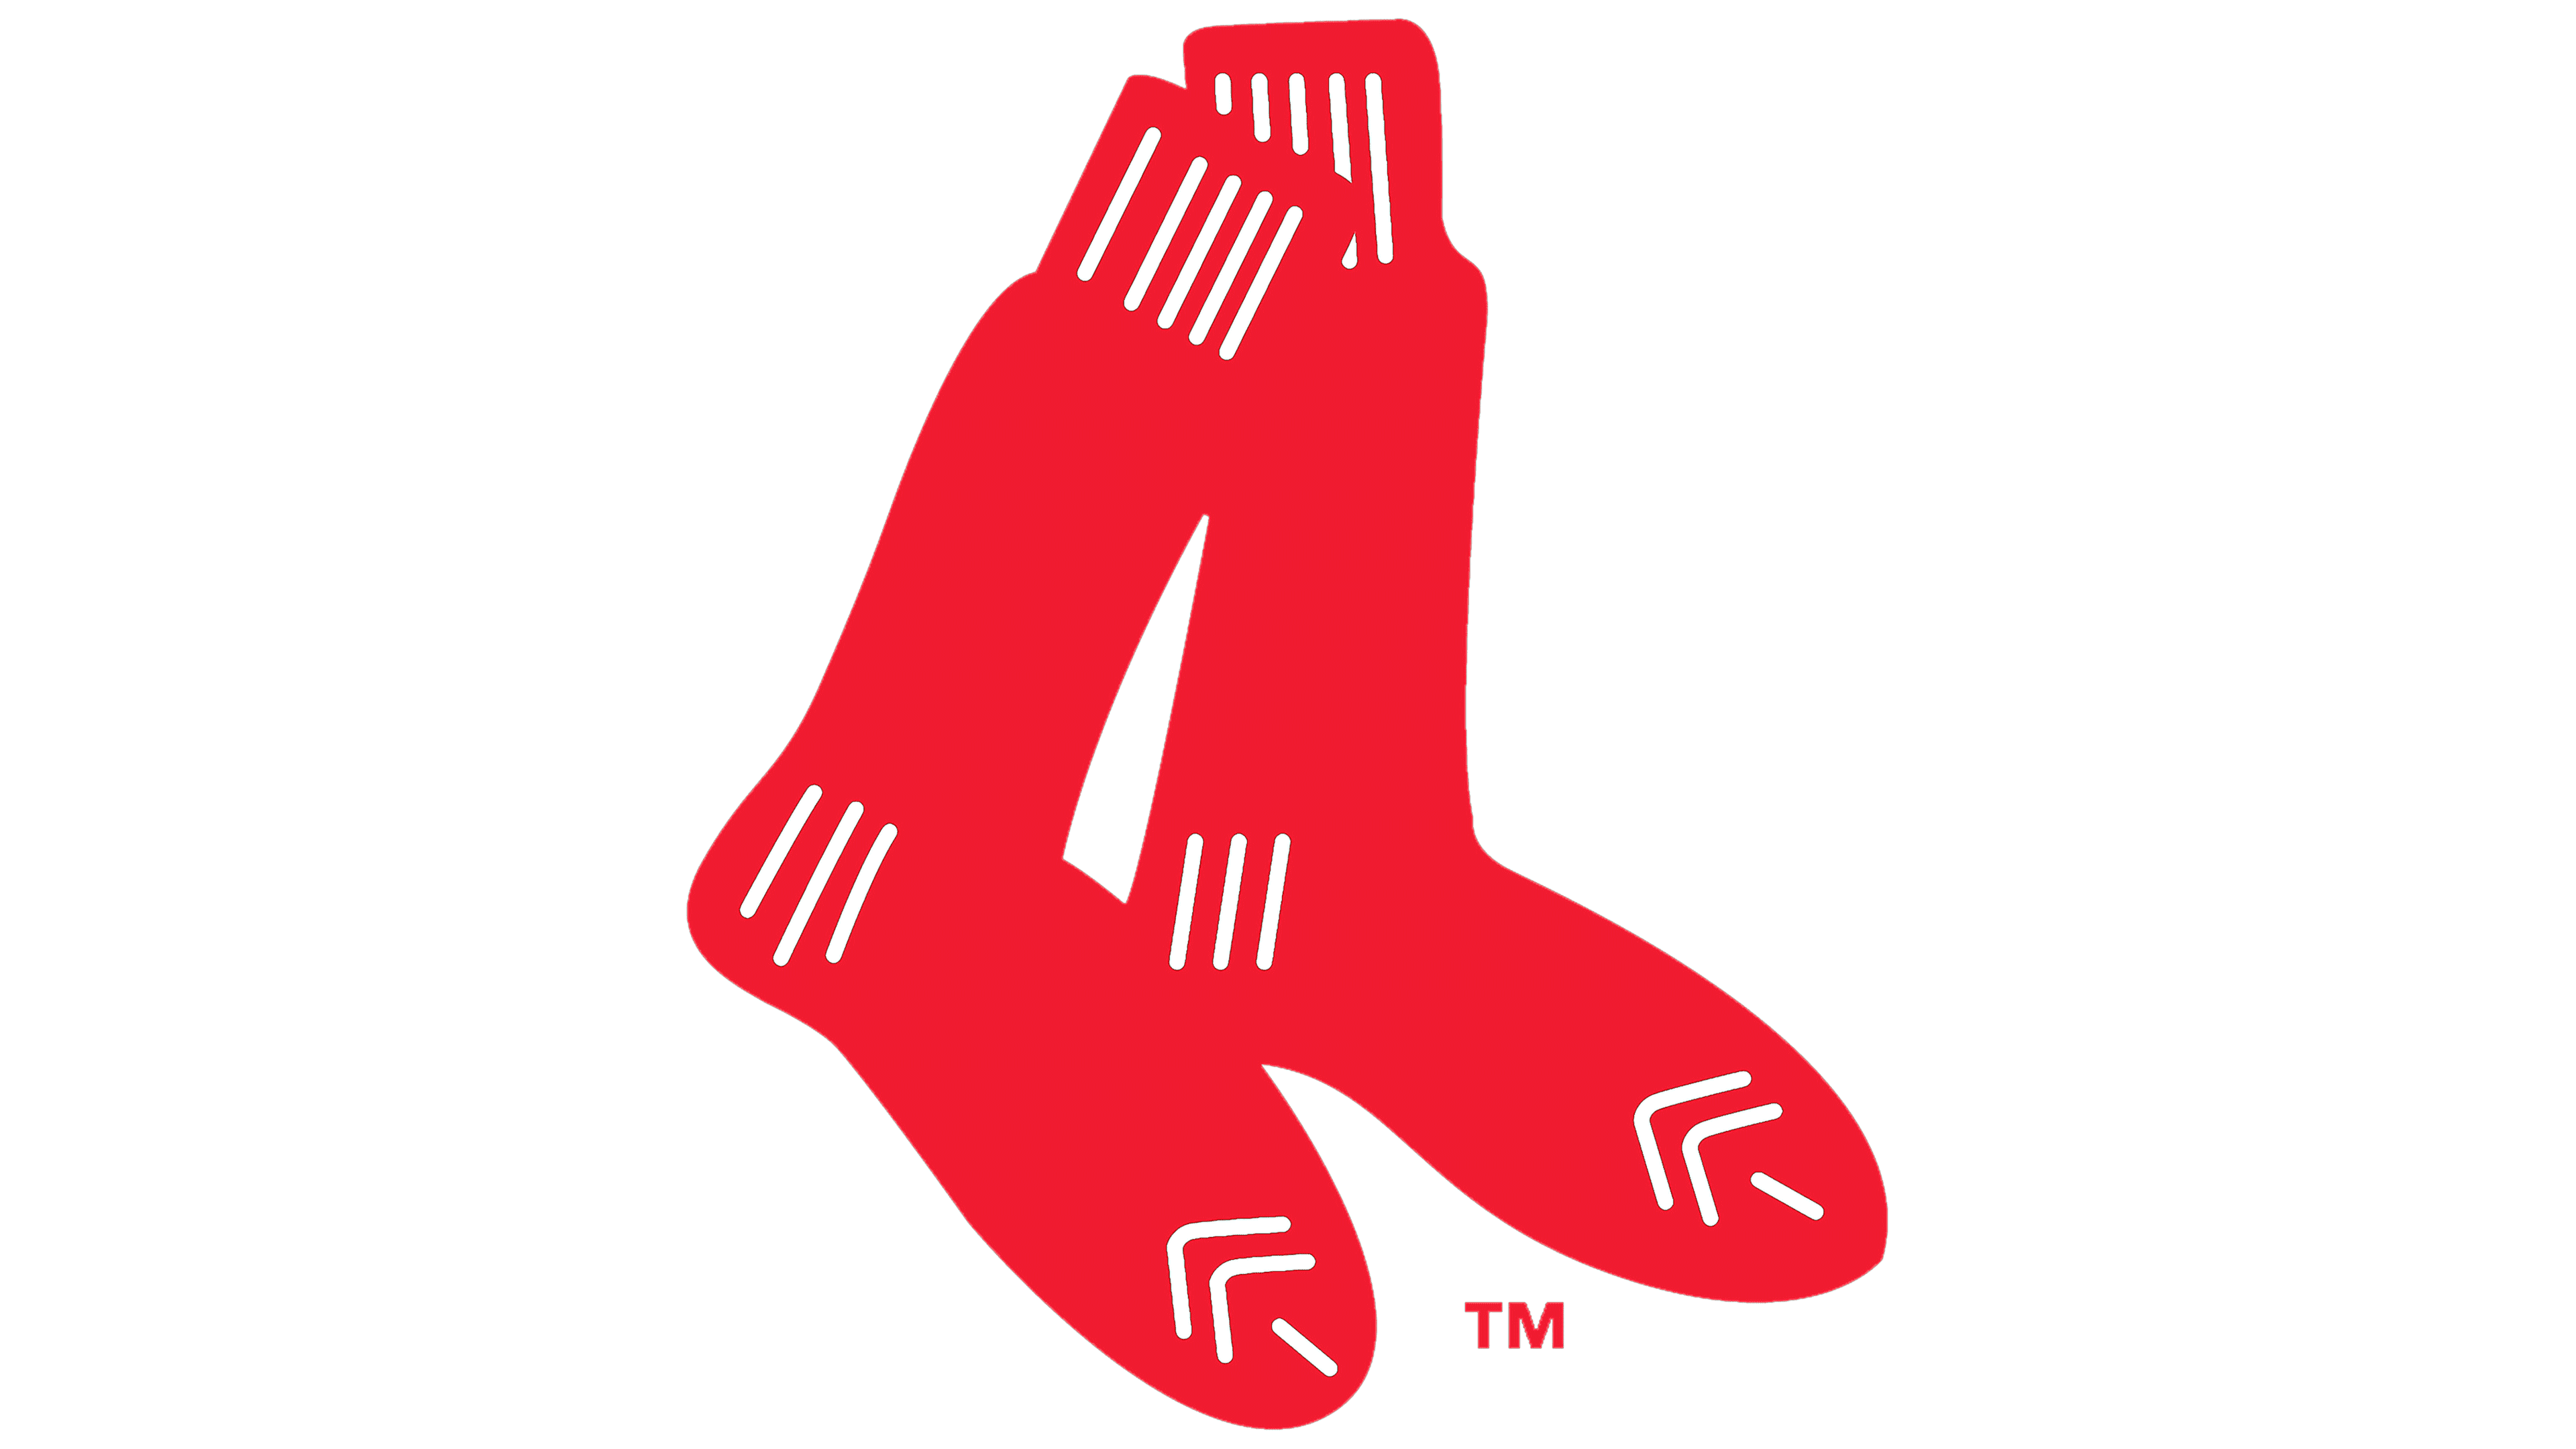 Seguro Libro Guinness de récord mundial conversión Boston Red Sox Logo, symbol, meaning, history, PNG, brand